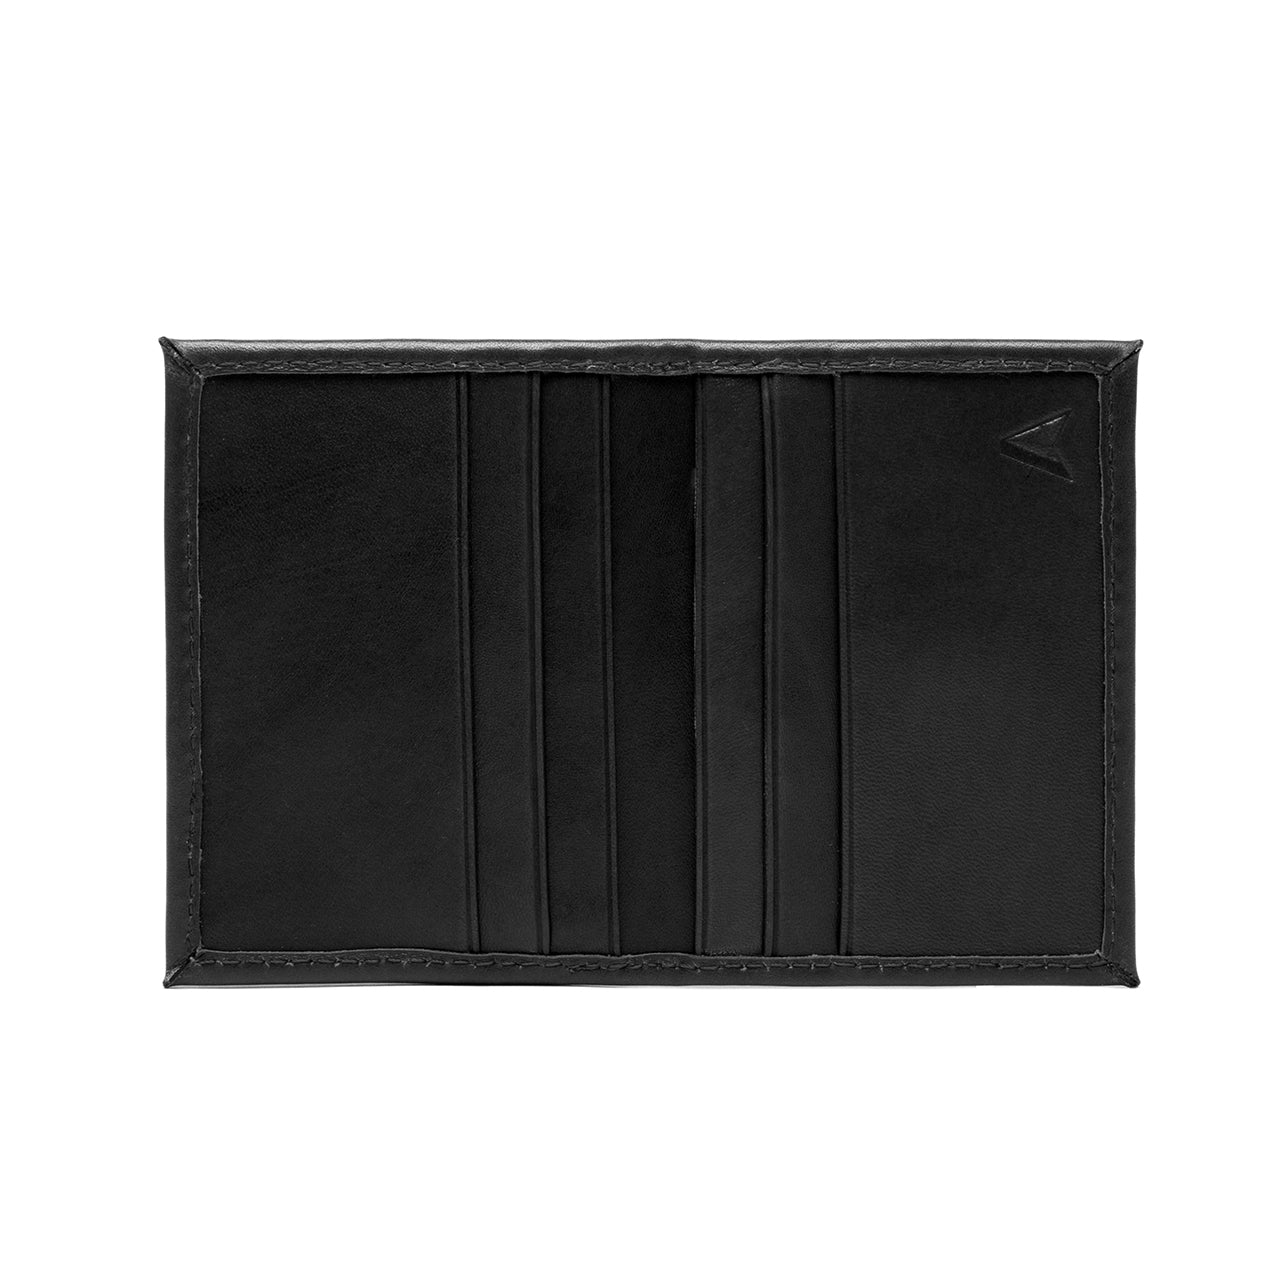 card-holder-wallet-quavaro.com